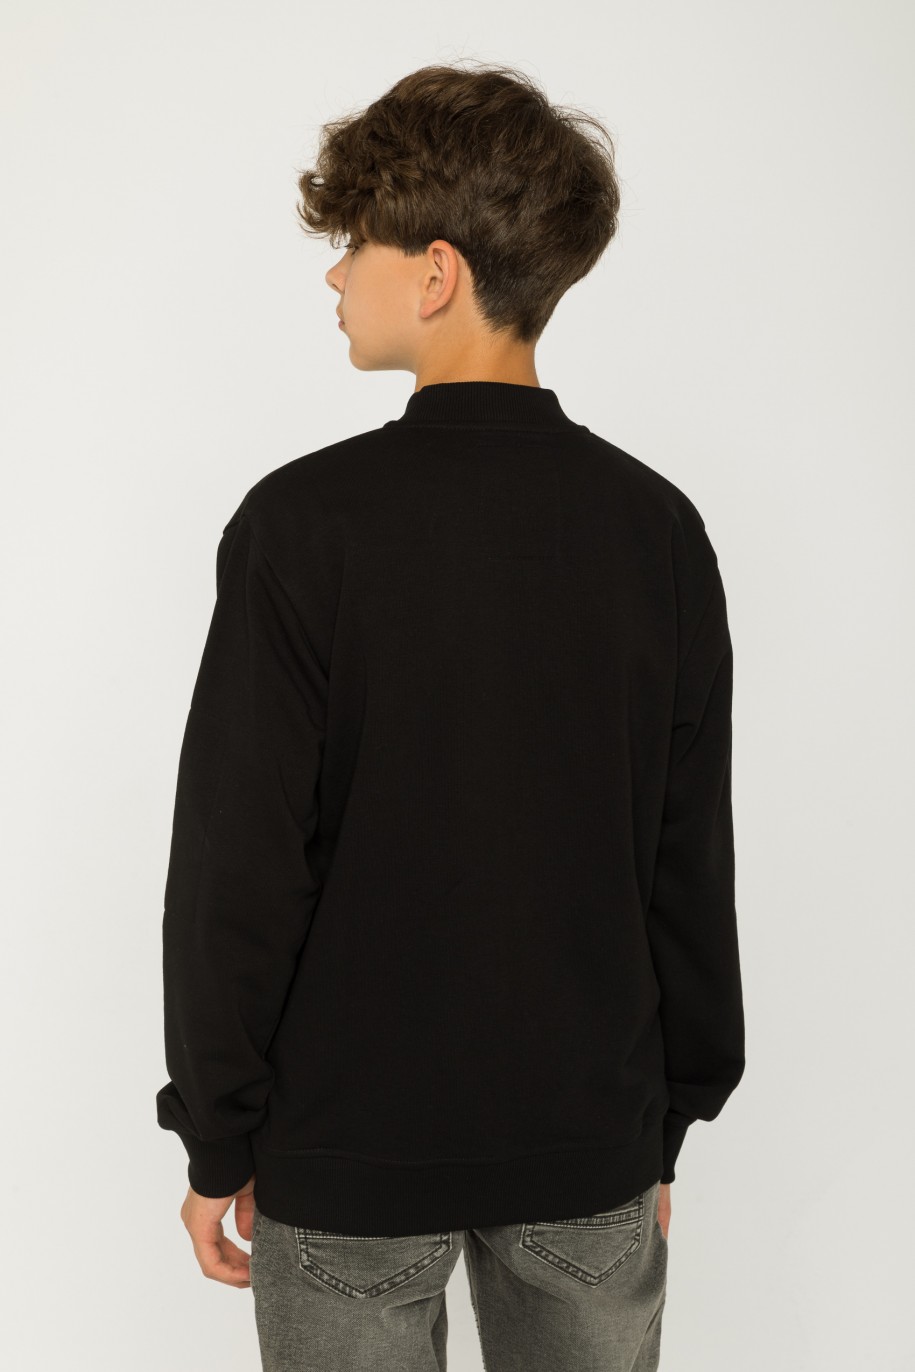 Czarna rozpinana bluza dresowa z nadrukami - 43327